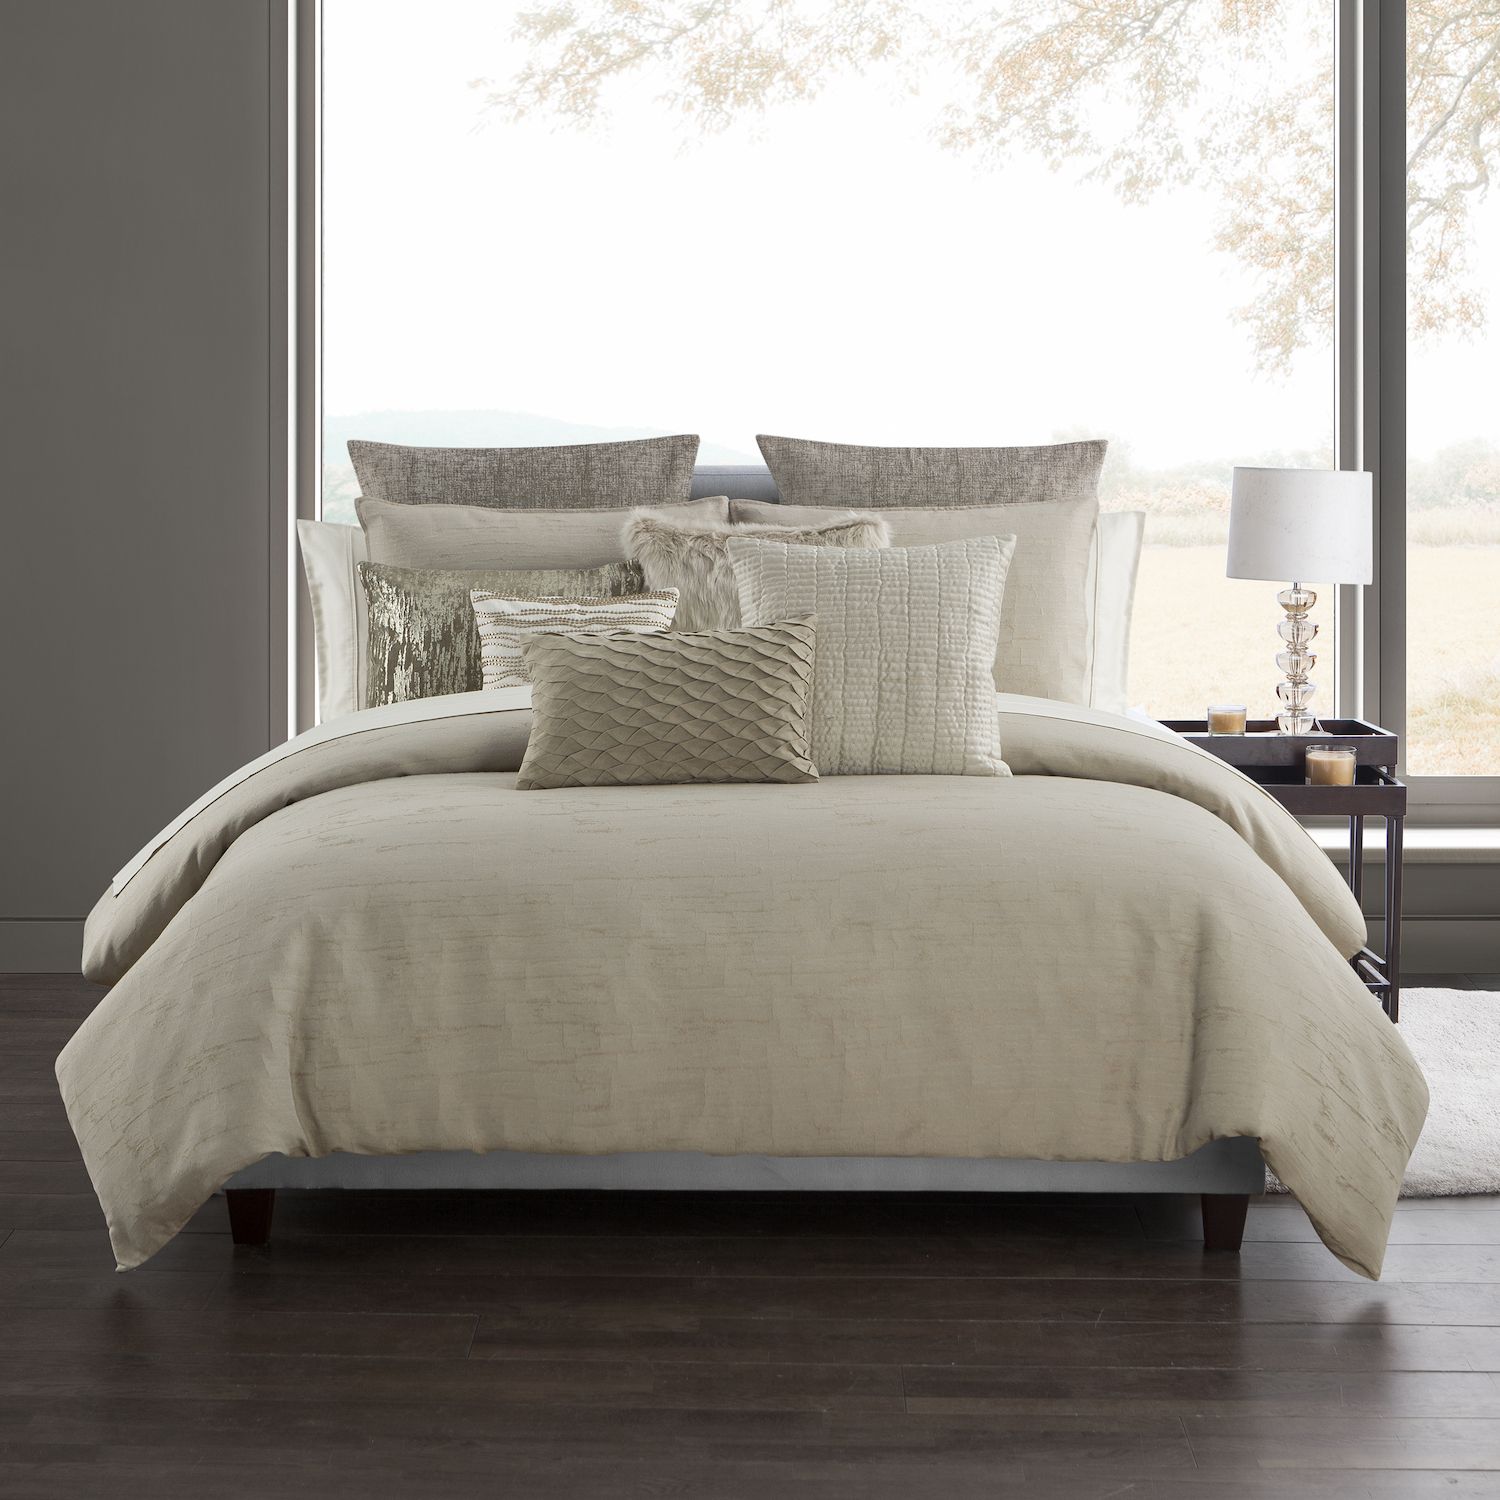 Image for HIGHLINE BEDDING CO Highline Bedding Co. Madrid 3-piece Comforter Set with Shams at Kohl's.